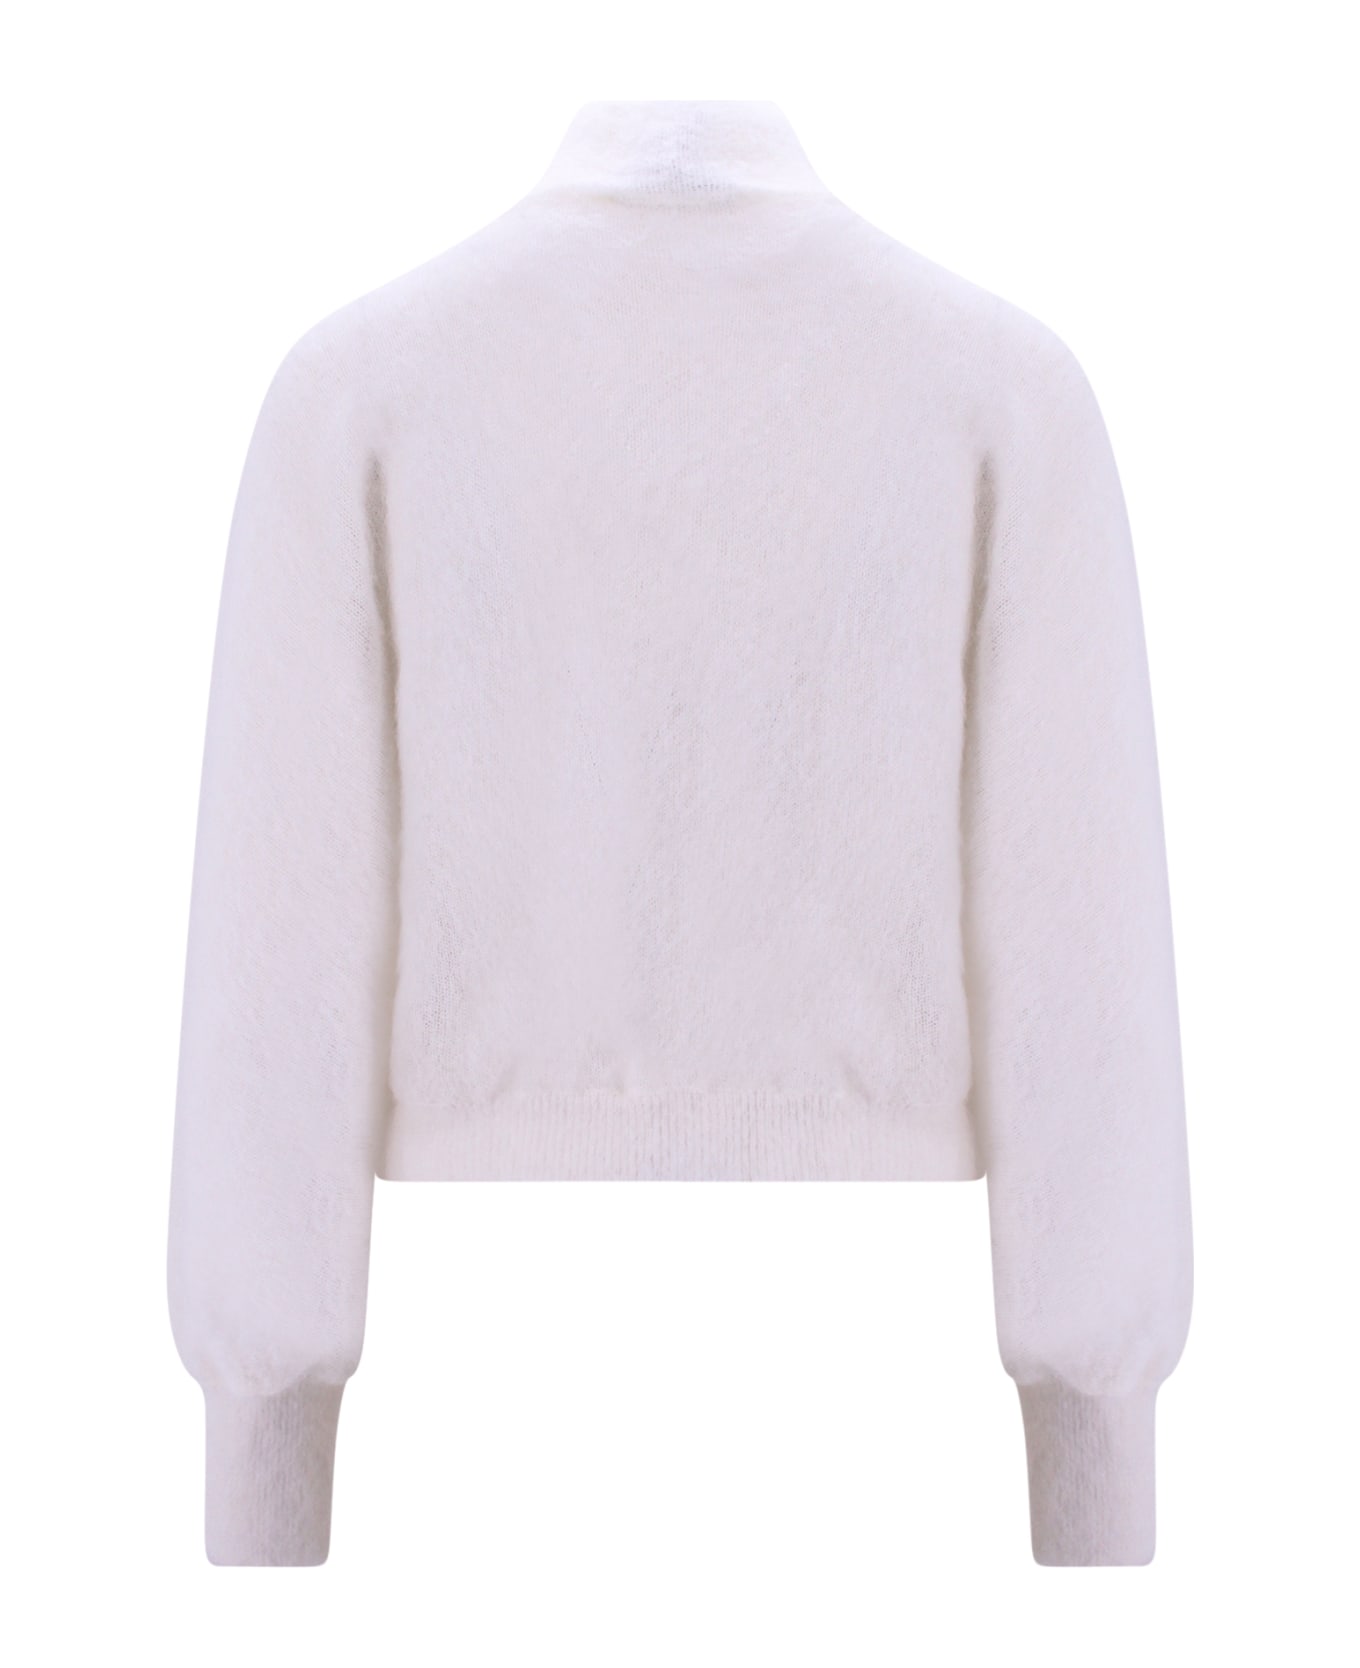 Alberta Ferretti Sweater - White ニットウェア